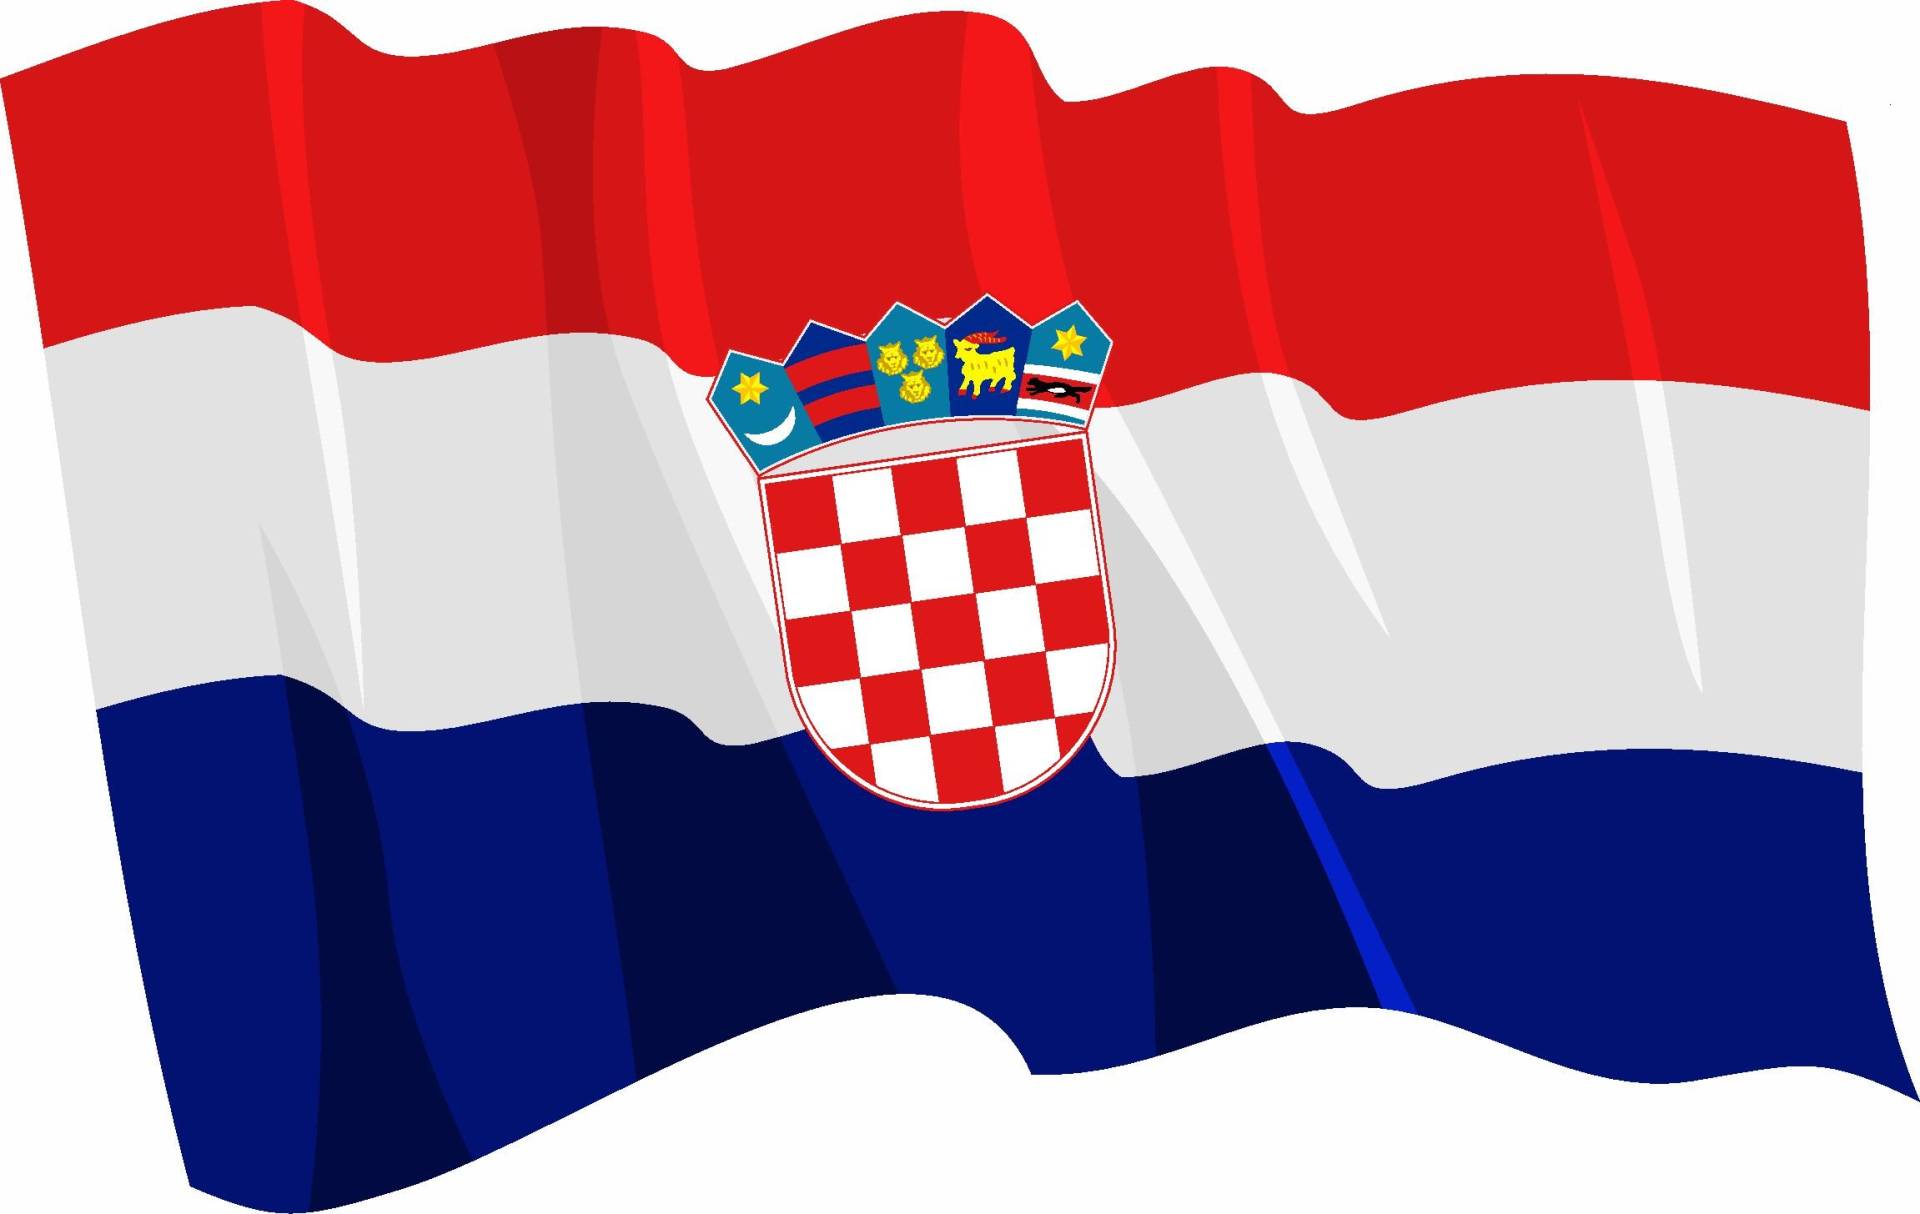 Etaia - 8x12,5 cm Auto Aufkleber wehende Fahne/Flagge von Kroatien Croatia Europa Länder Sticker Motorrad Handy von Etaia